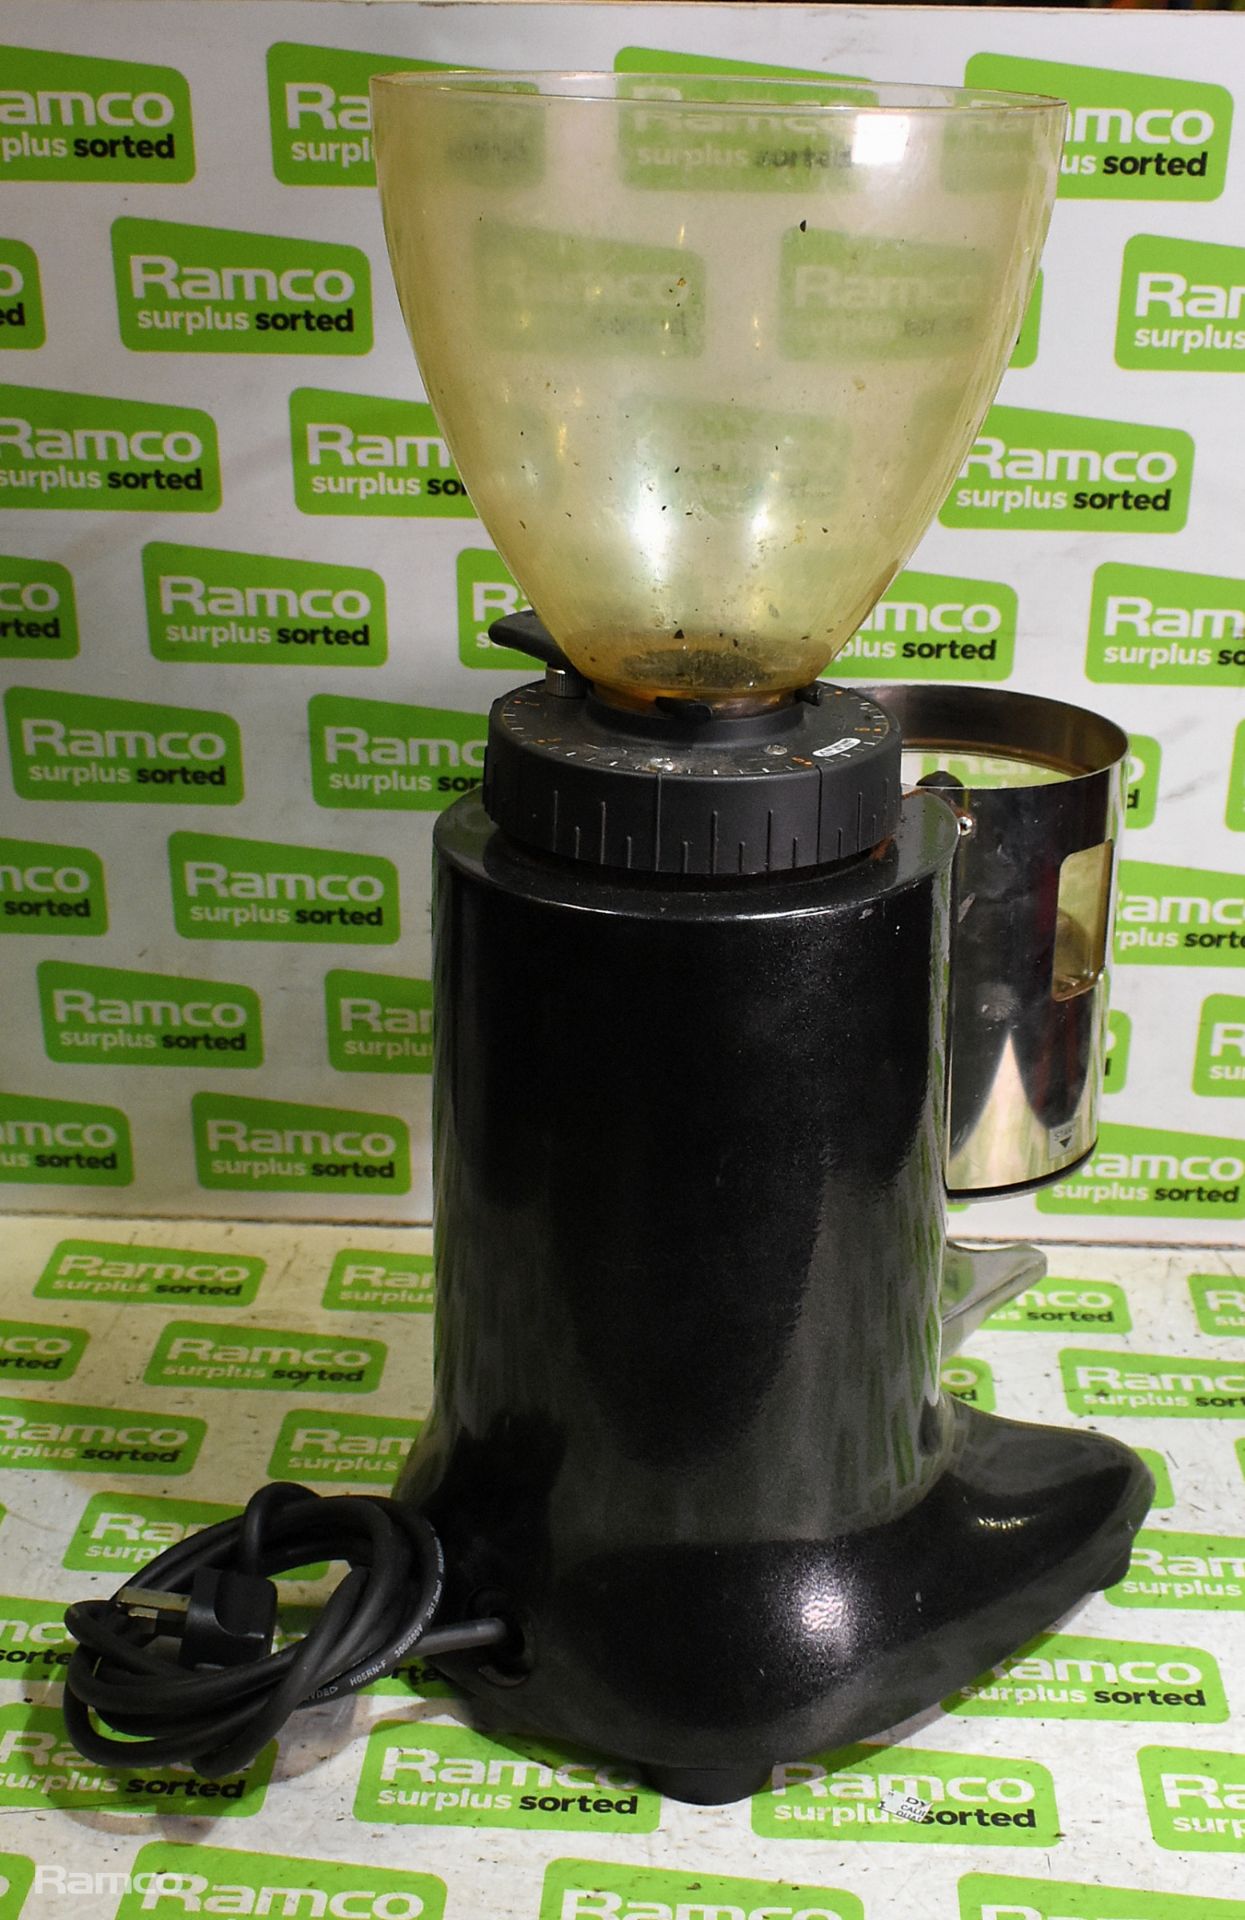 Ceado E6X espresso coffee grinder & Ceado E6X espresso coffee grinder body - Image 8 of 11